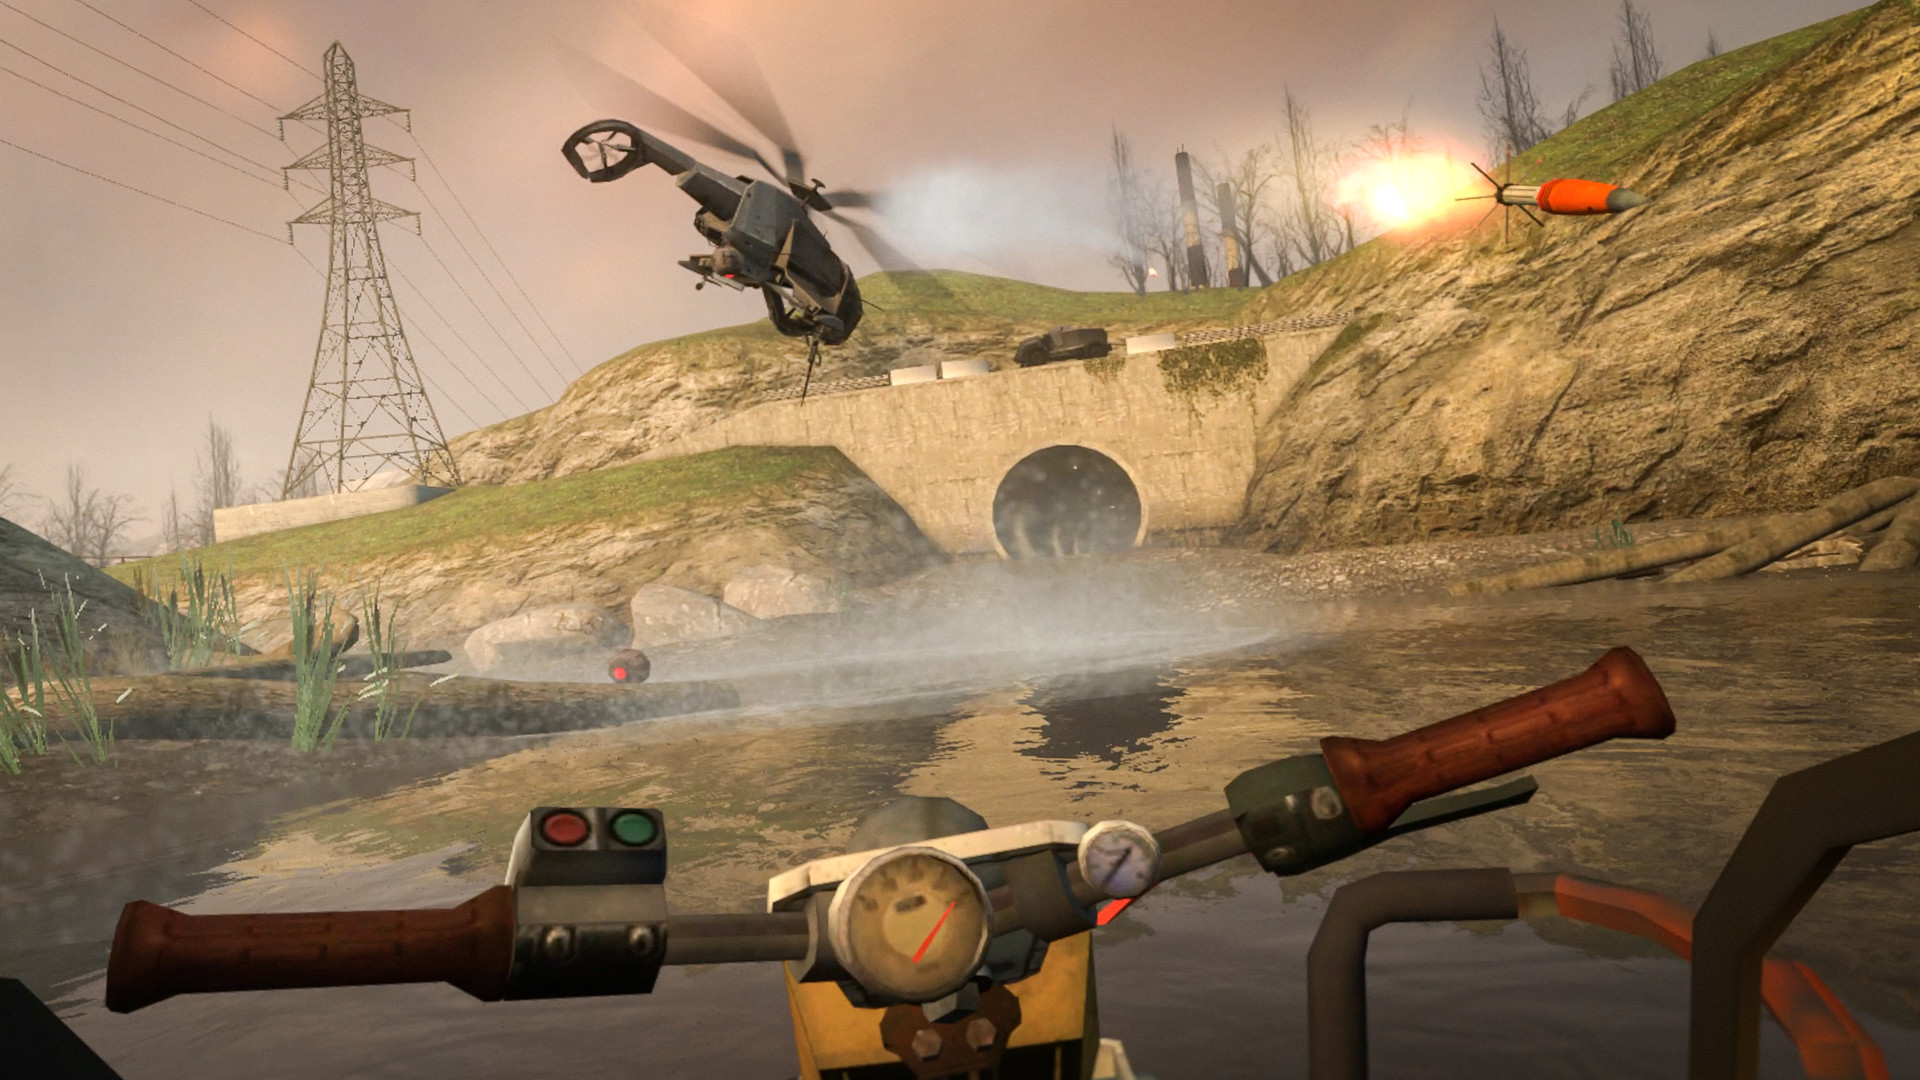 歷經八年坎坷 《戰慄時空2》備受期待VR Mod今日在Steam上推出